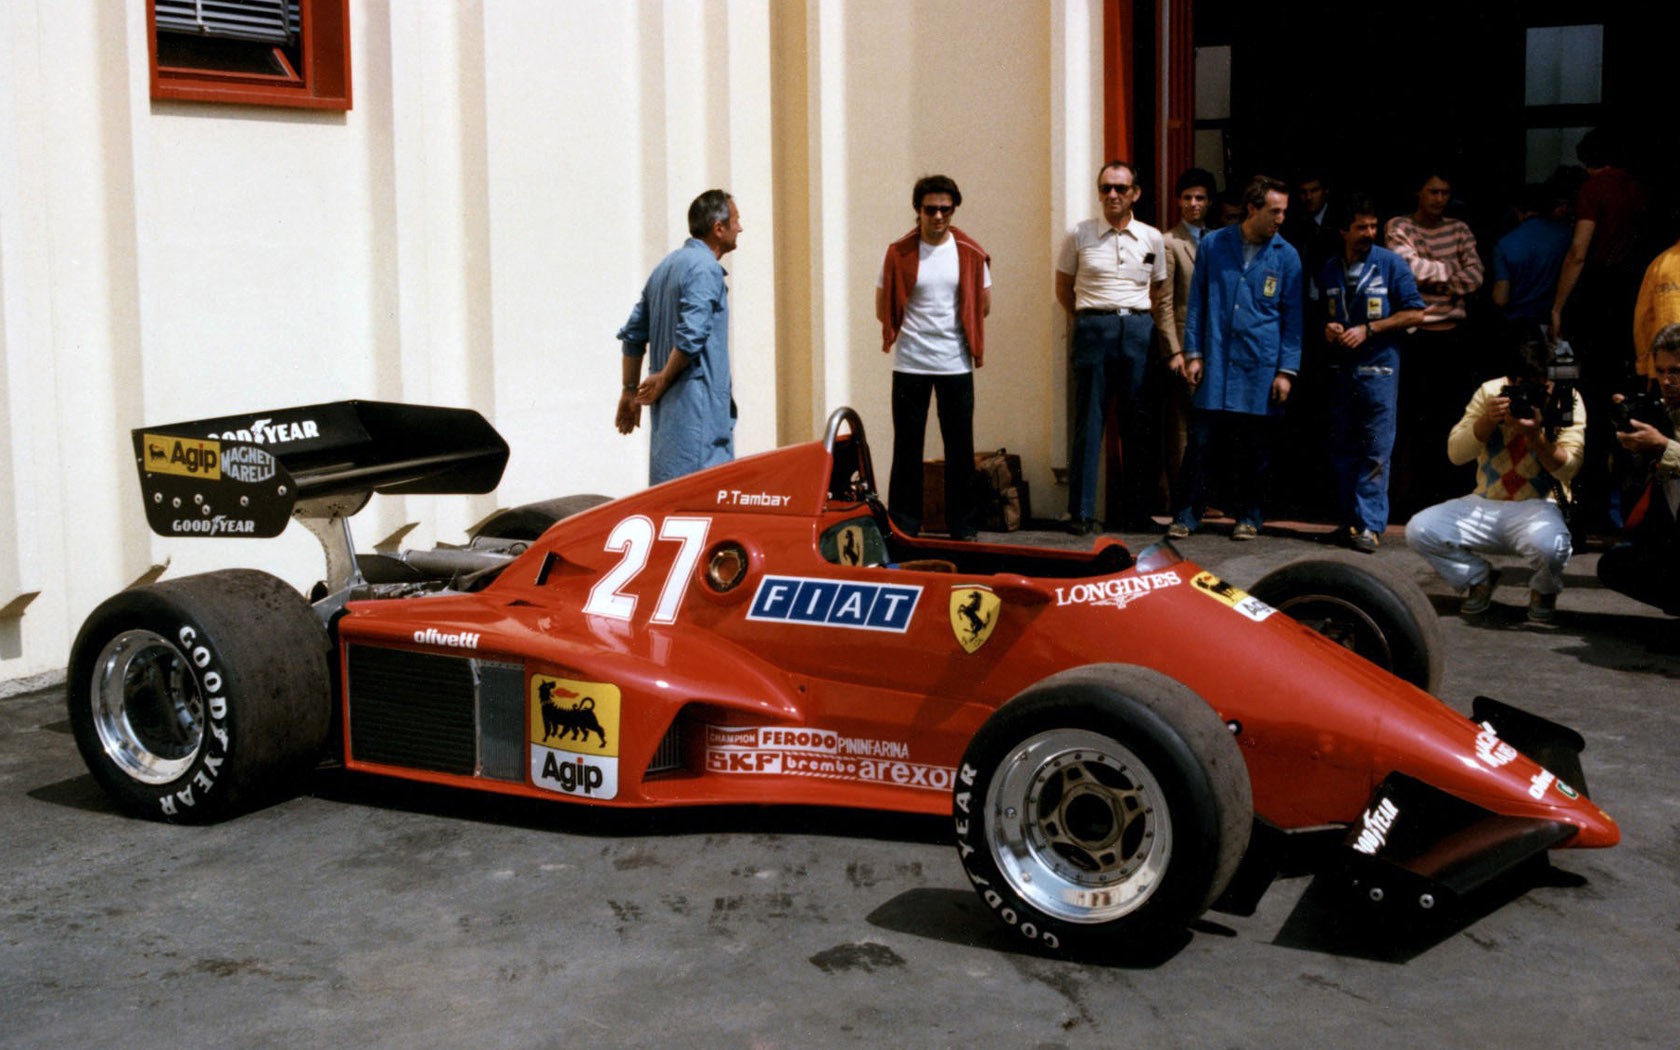 Ferrari 126 C2B Wallpapers